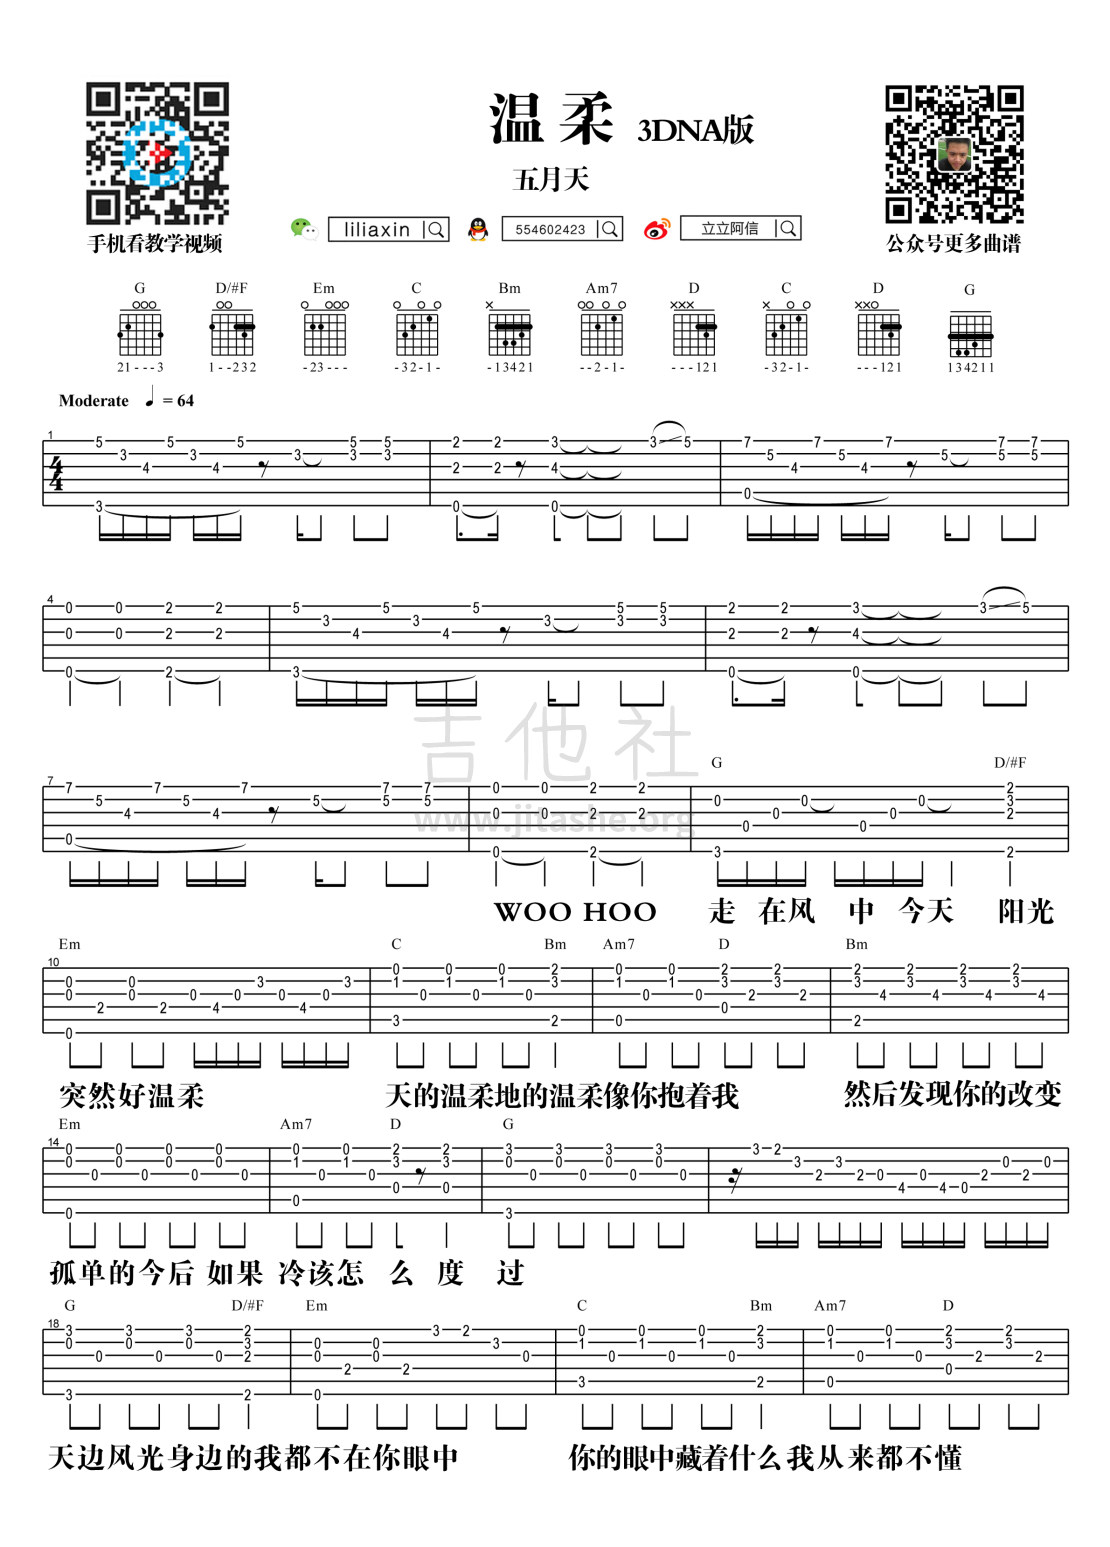 【阿信乐器】#19 五月天《温柔》3DNA版吉他教学吉他谱(图片谱,弹唱)_五月天(Mayday)_温柔·-1.jpg